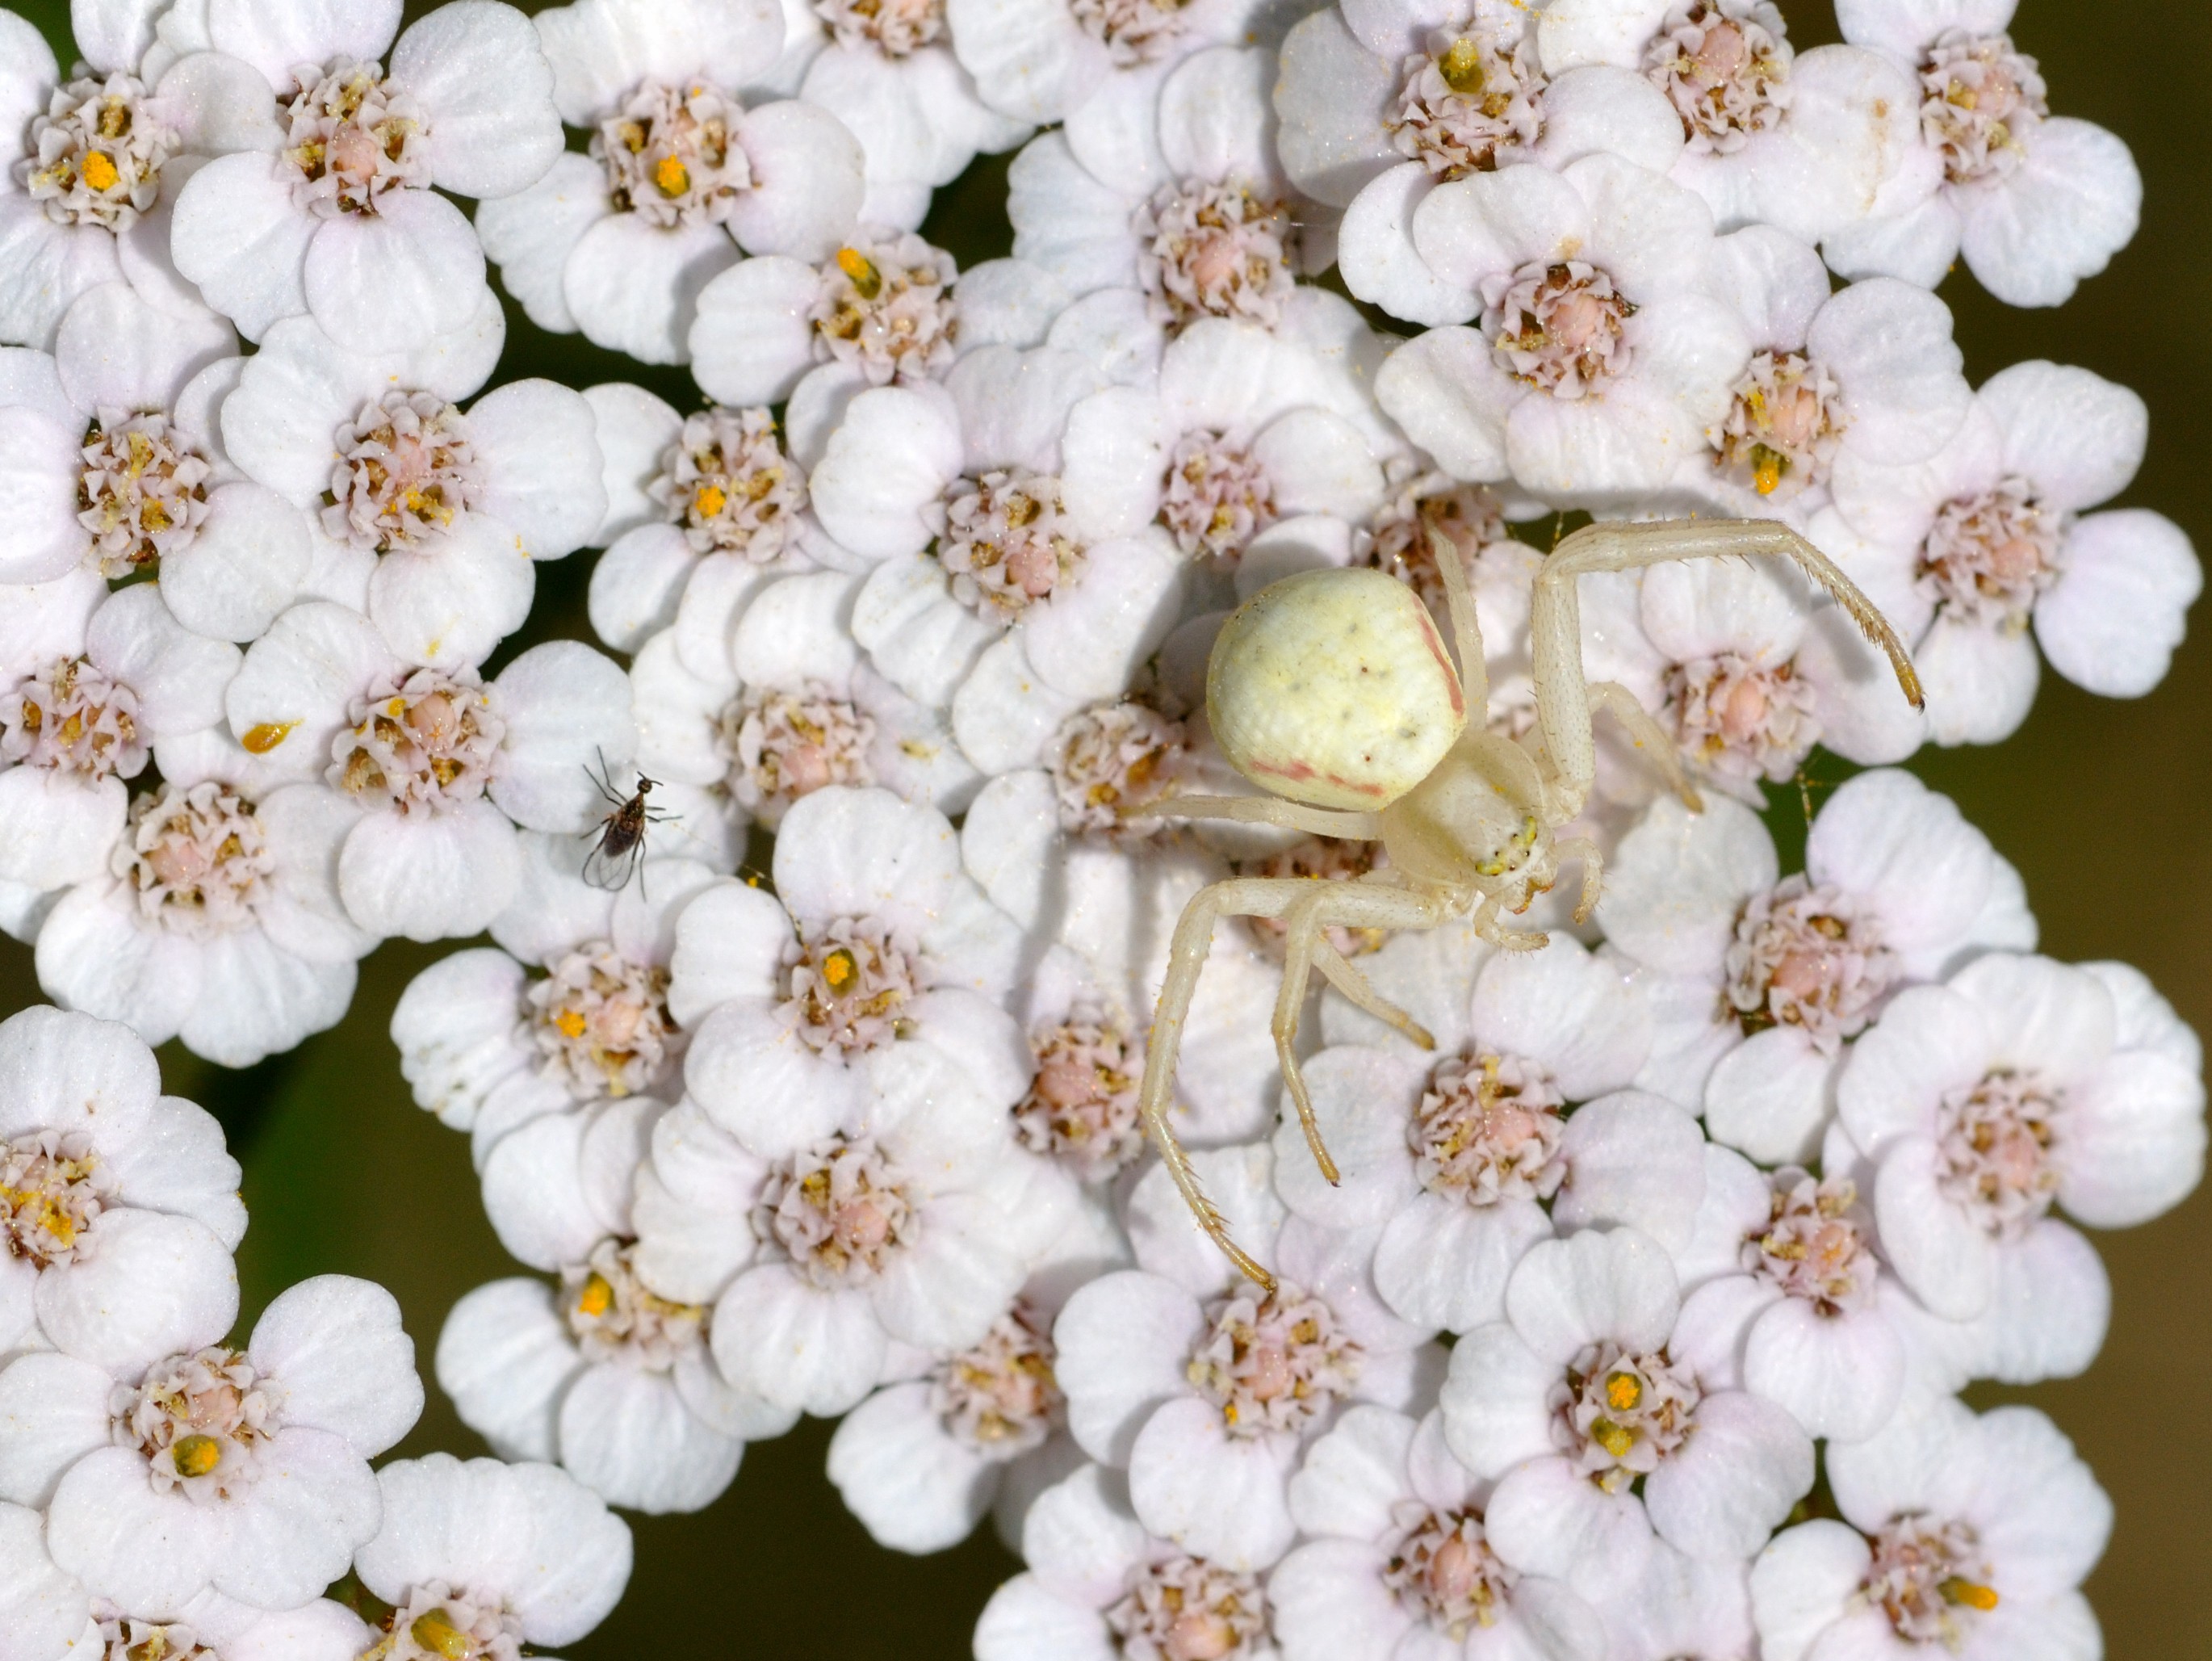 General 2740x2057 animals spider arachnid flowers nature